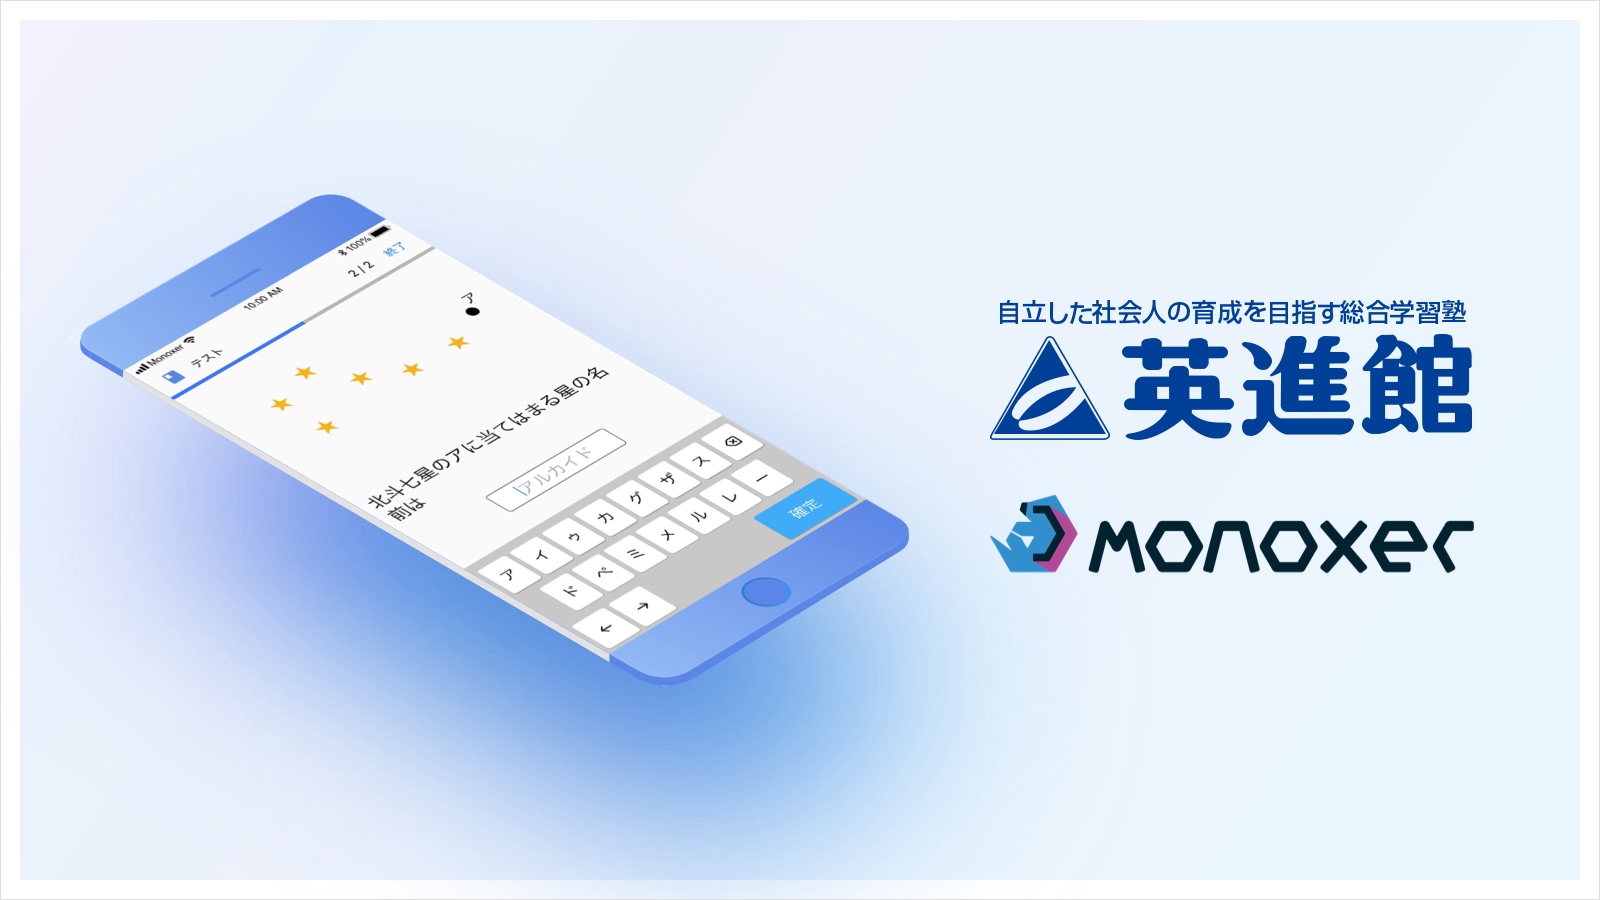 九州地方最大手の学習塾 英進館 が記憶定着のための学習アプリ Monoxer モノグサ を導入 モノグサ株式会社のプレスリリース